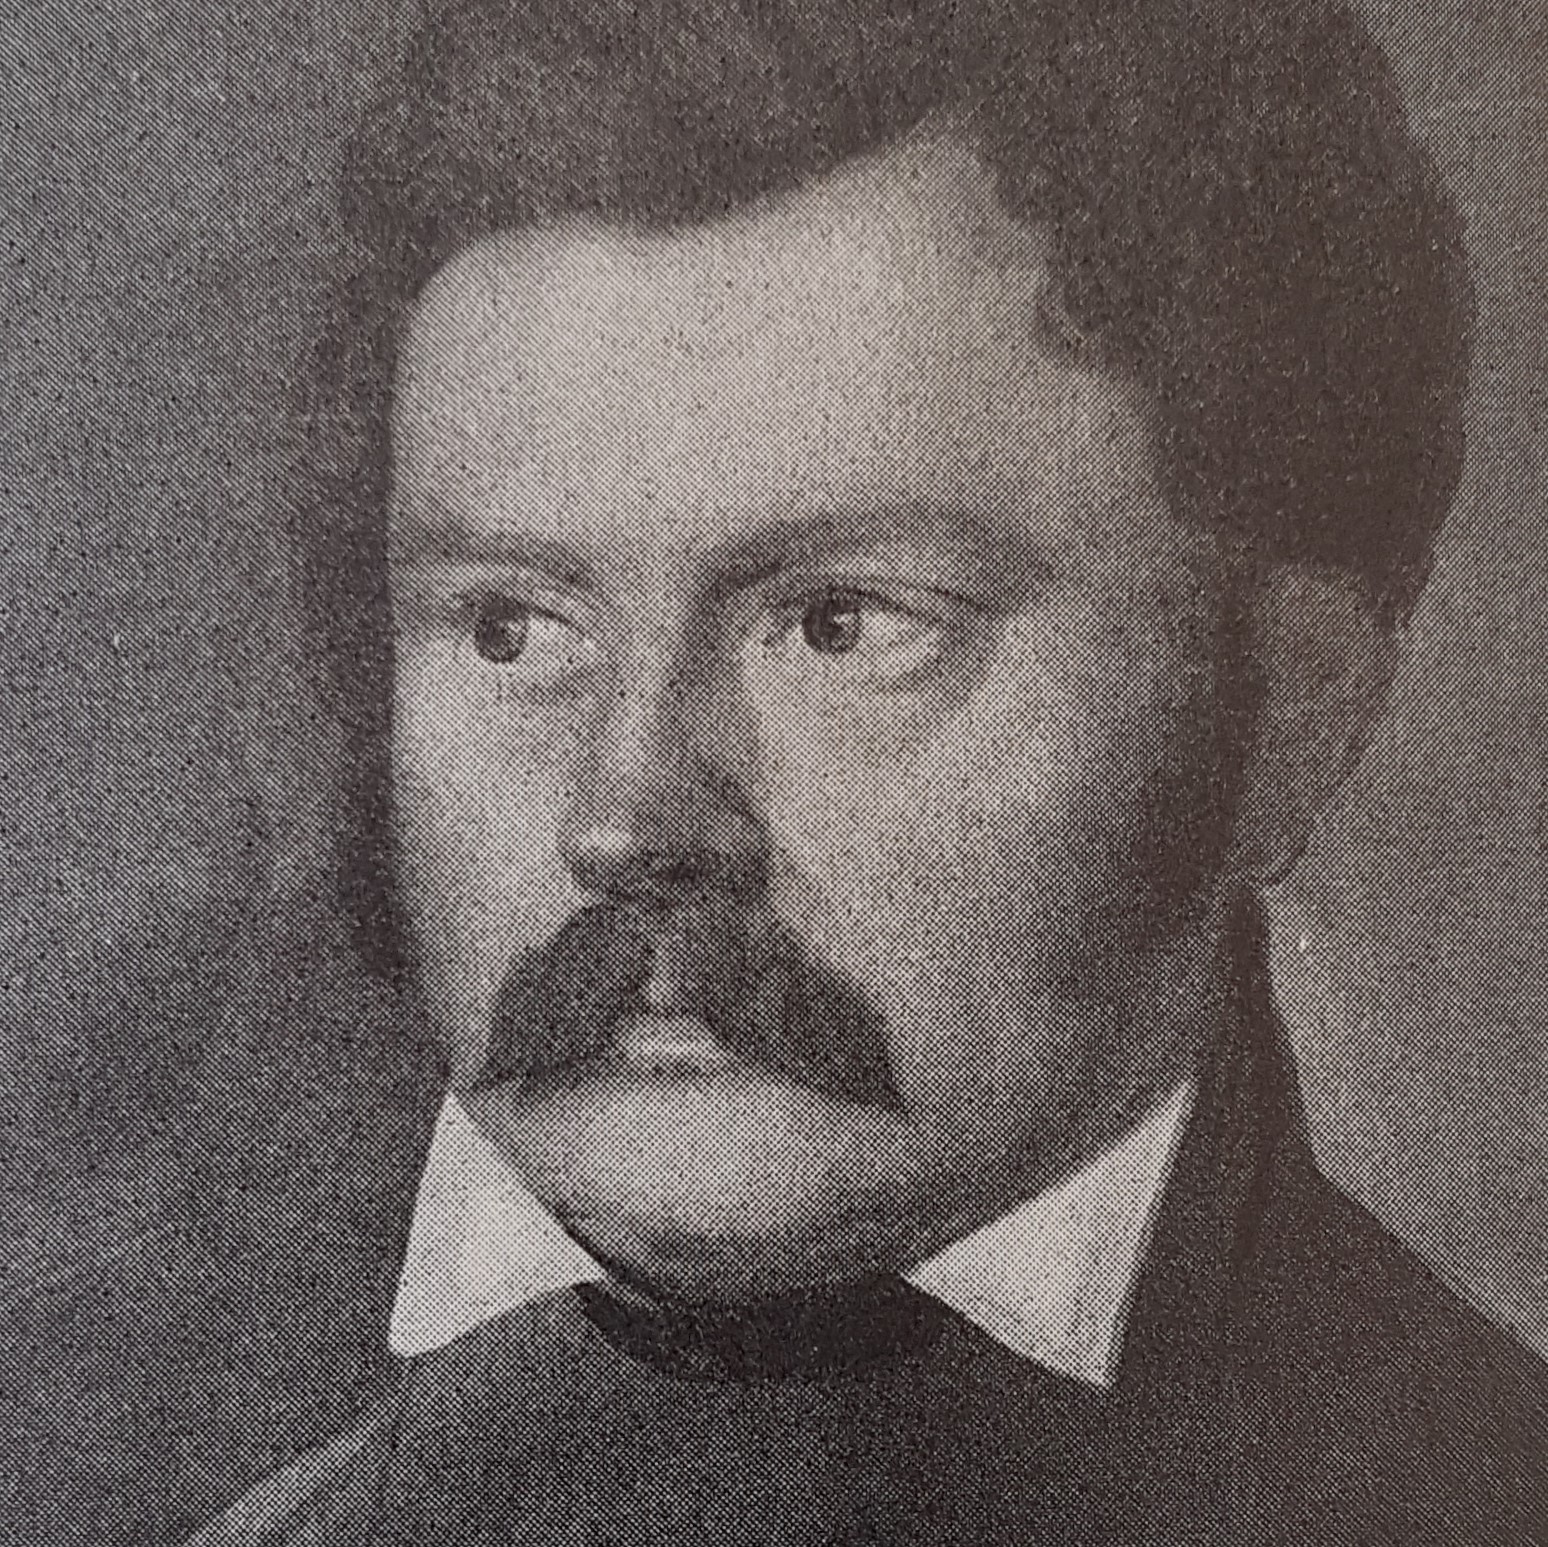 Hjalmar Mörner